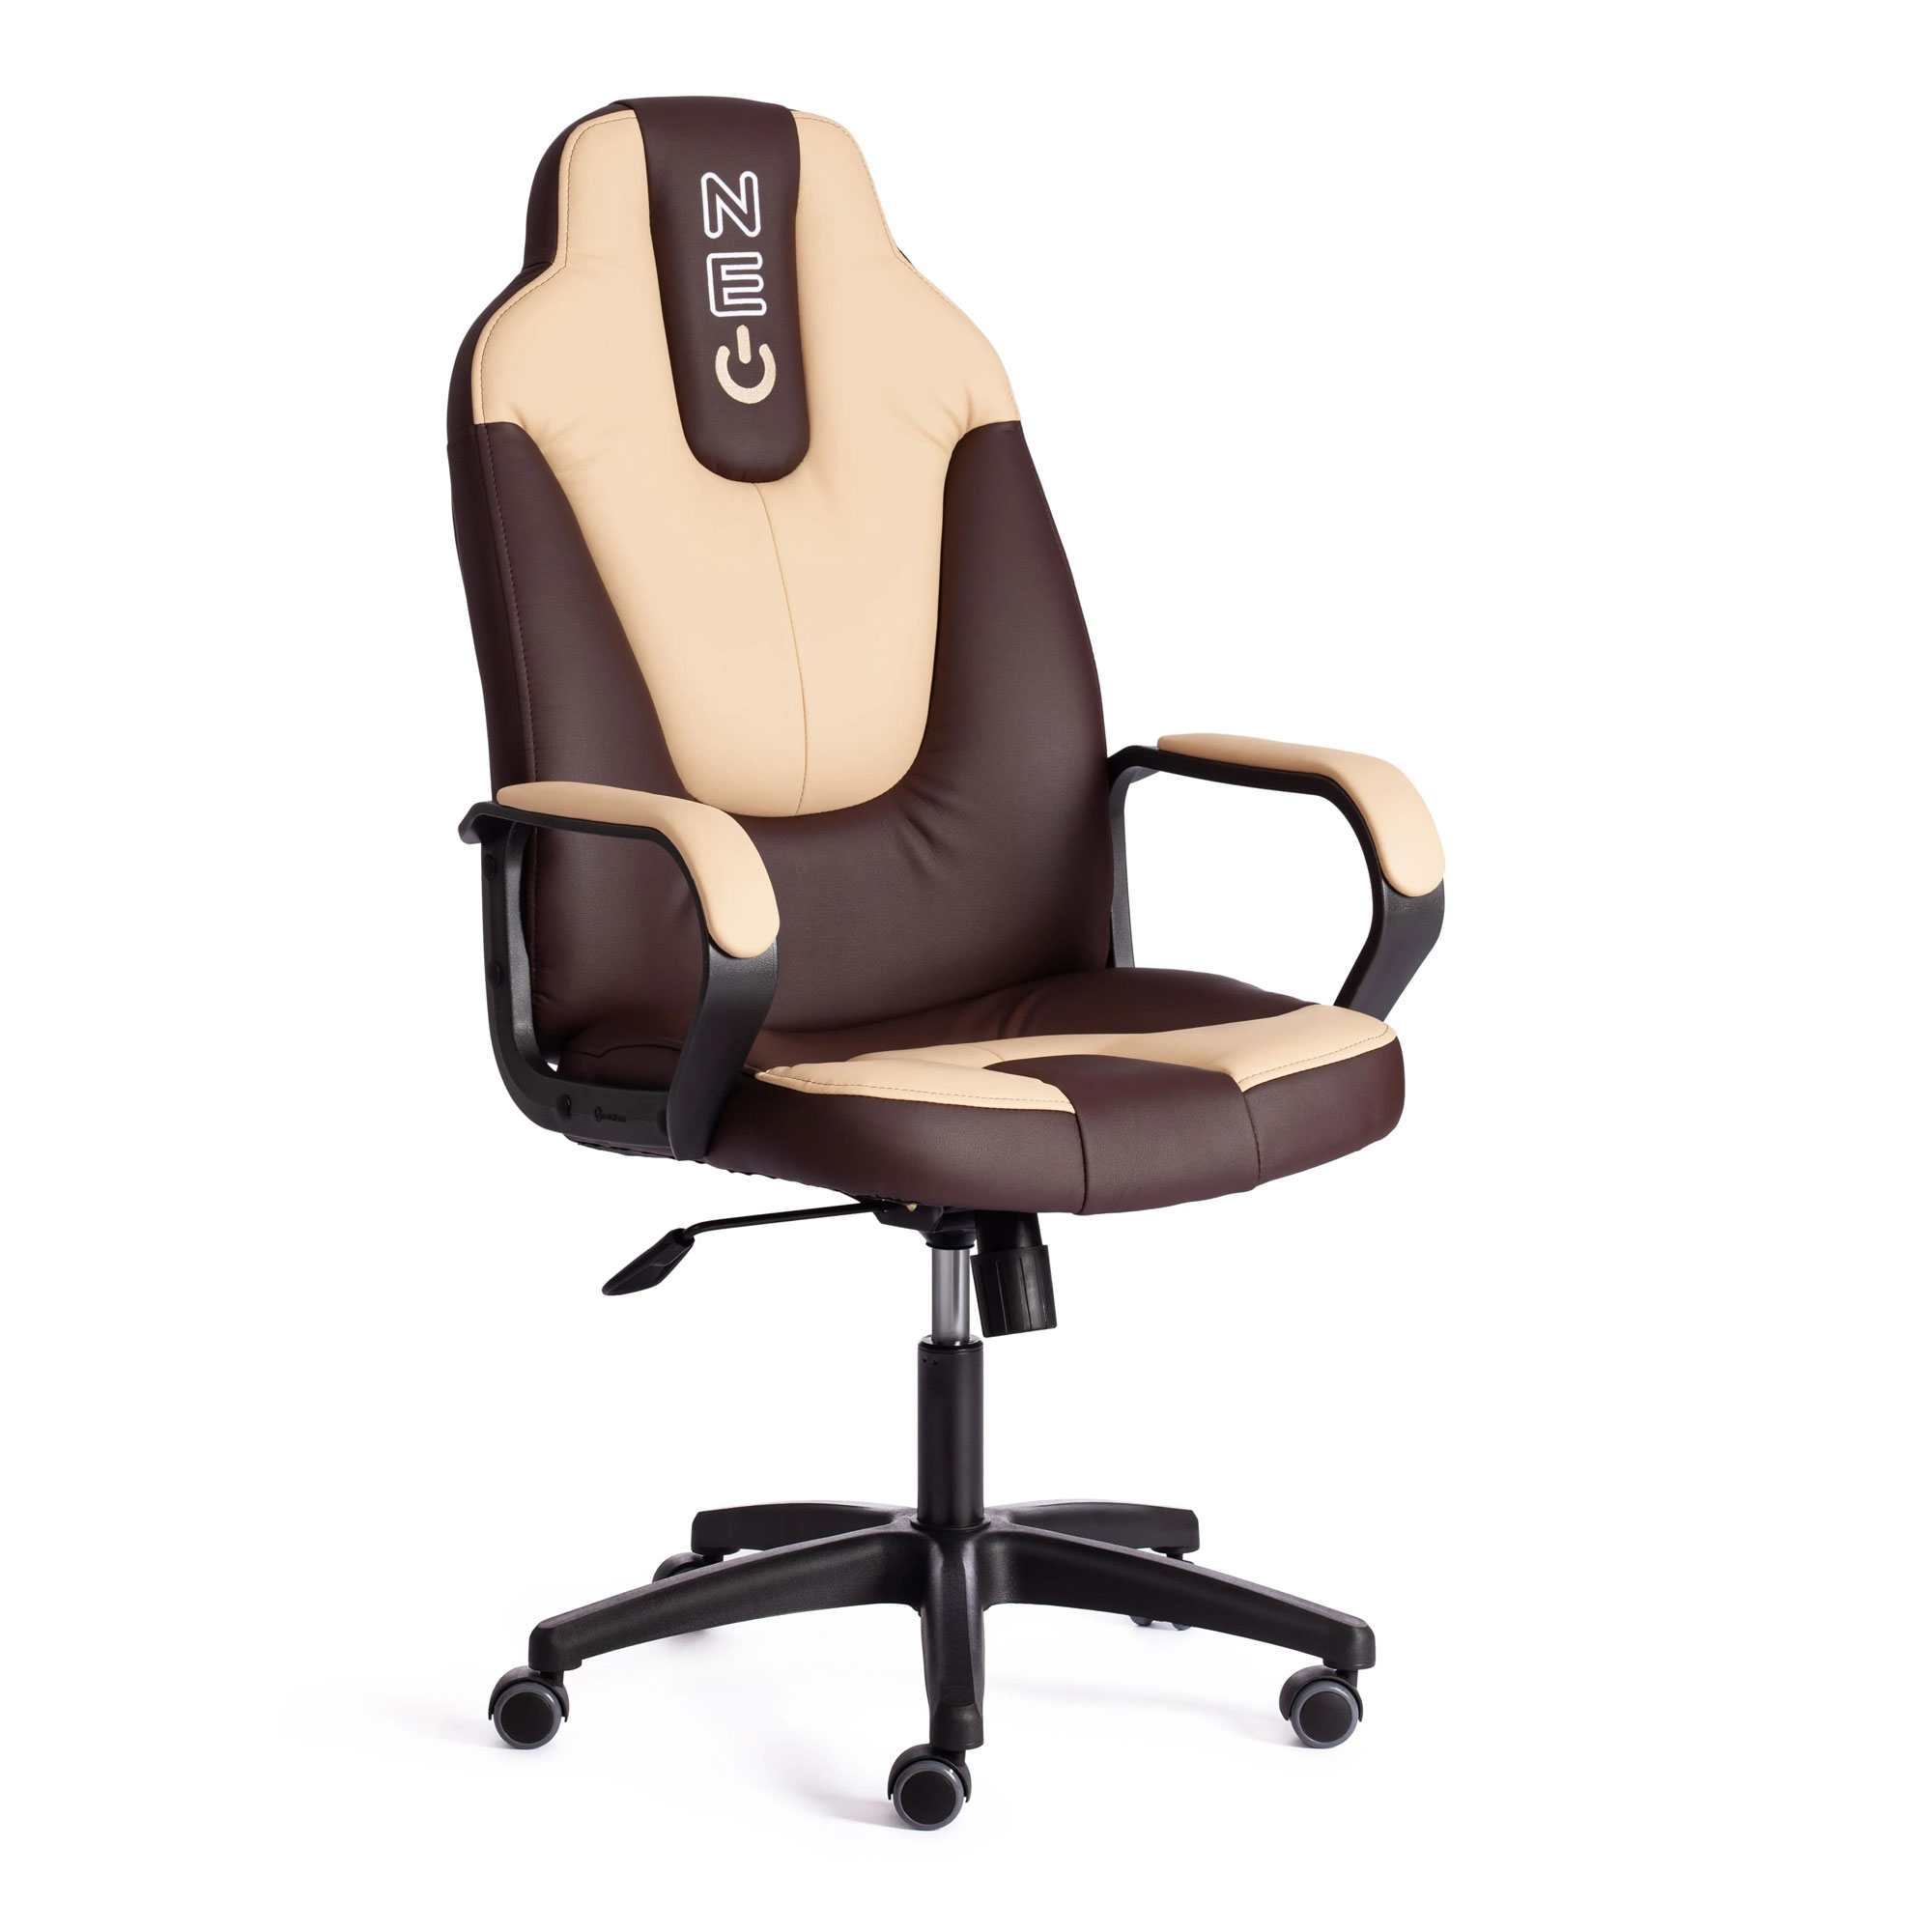 Кресло компьютерное TC Neo искусственная кожа коричневое с бежевым 64х49х122 см кресло компьютерное tc искусственная кожа бежевое 63х48х117 см